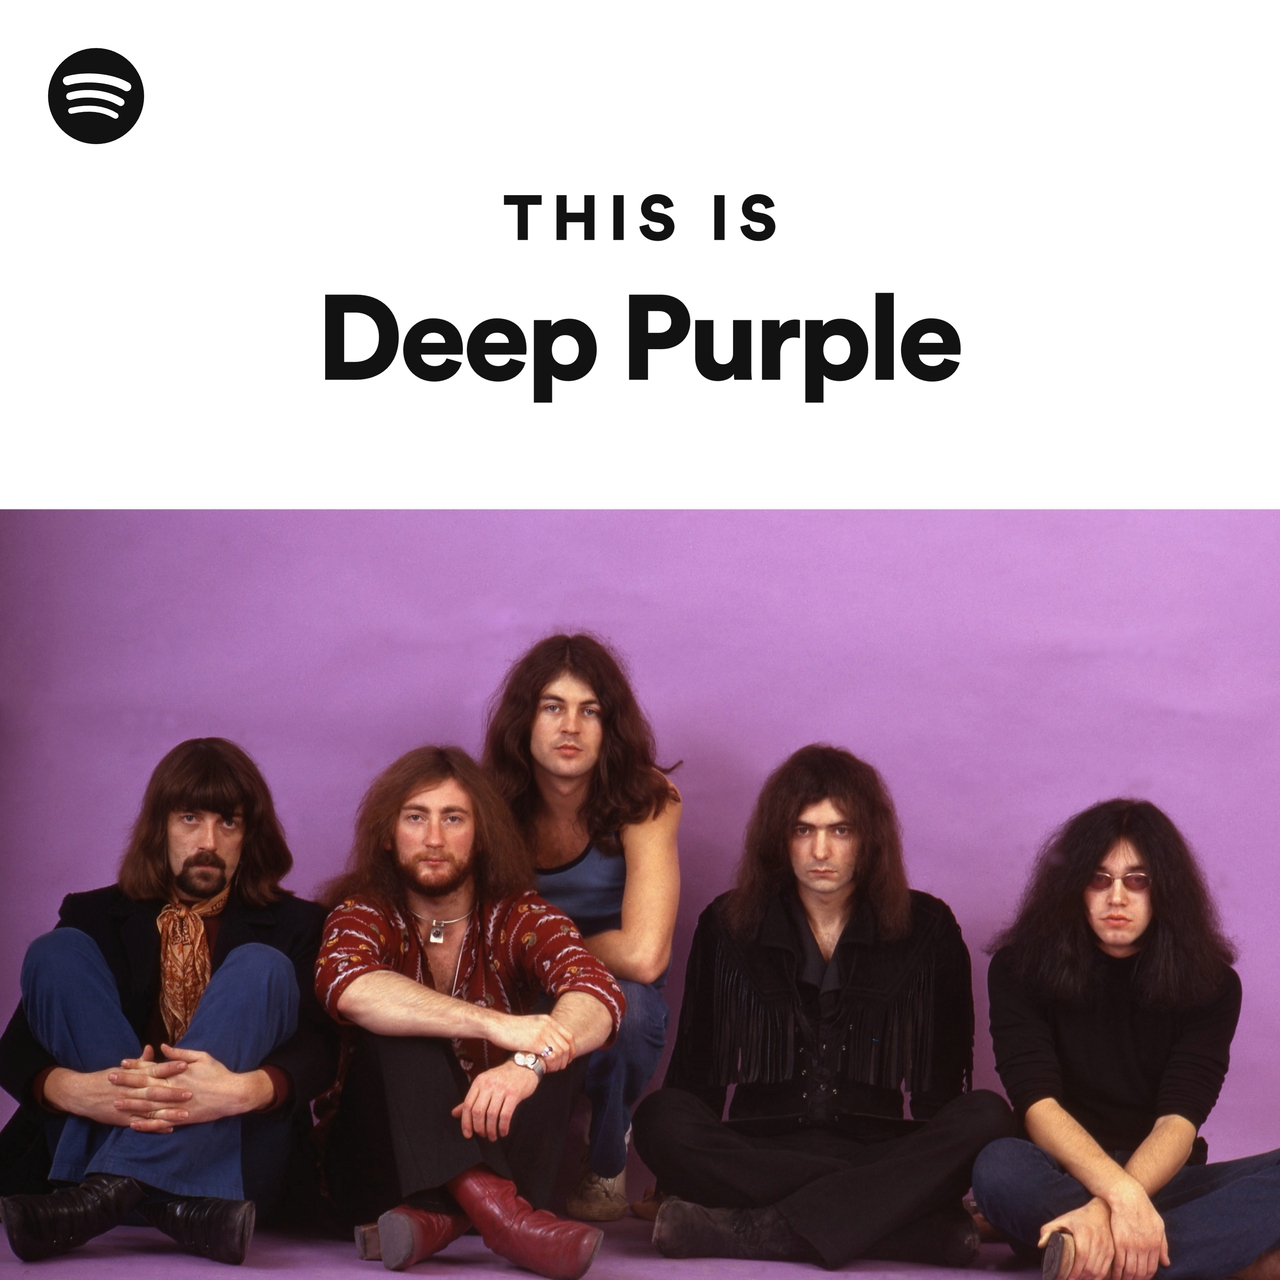 Deep purple участники группы фото с именами